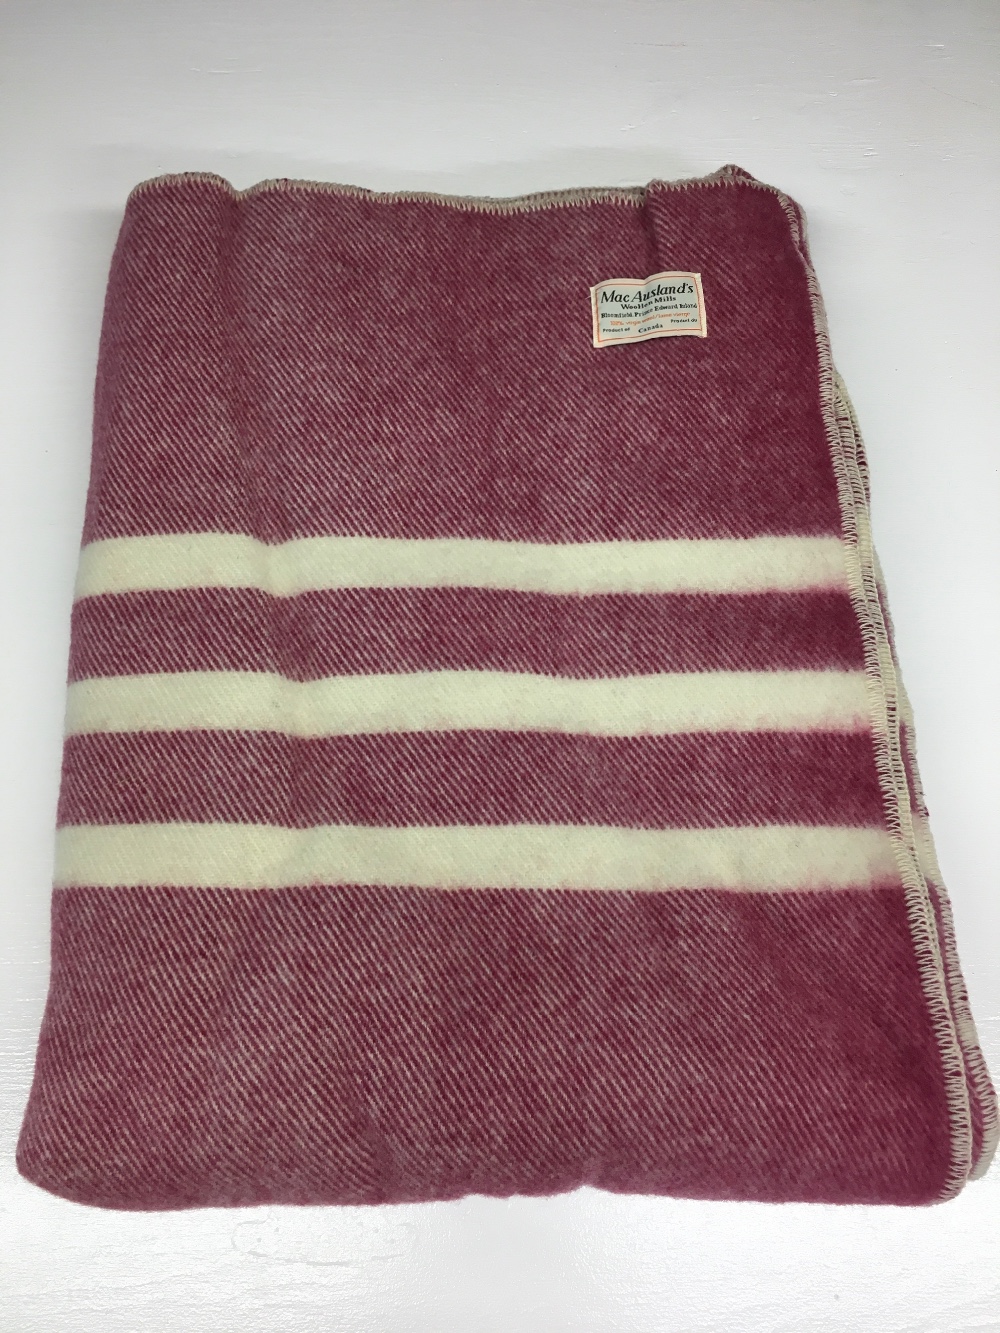 Blankets (tweed) - MacAuslands Woolen Mills, Bloomfield, PEI